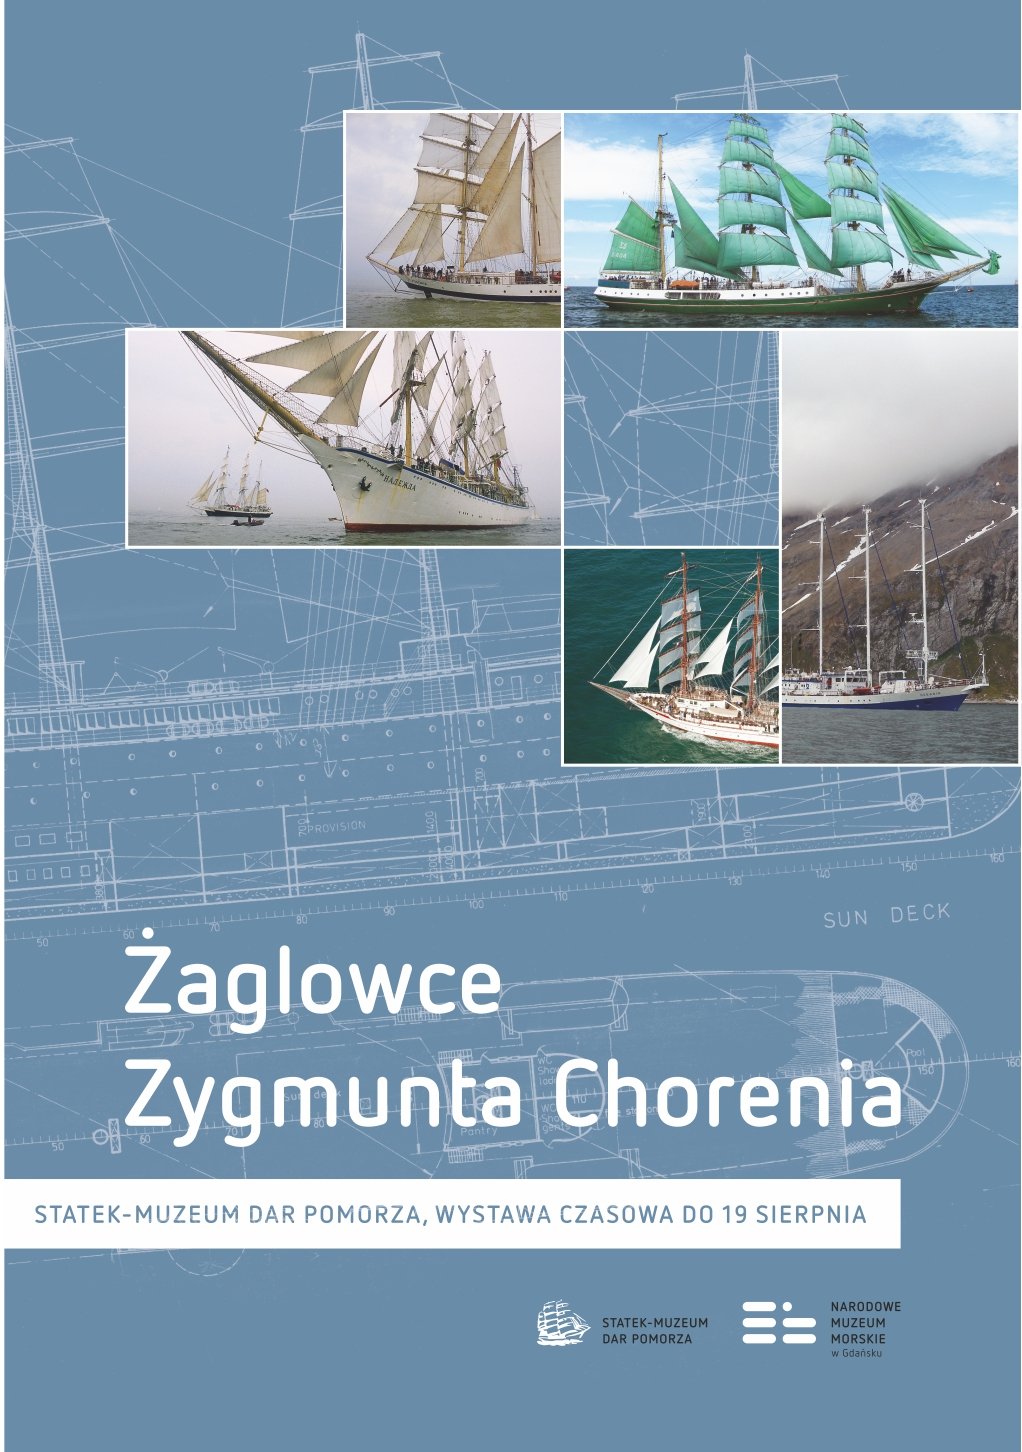 Żaglowce Zygmunta Chorenia - wystawa na Darze Pomorza